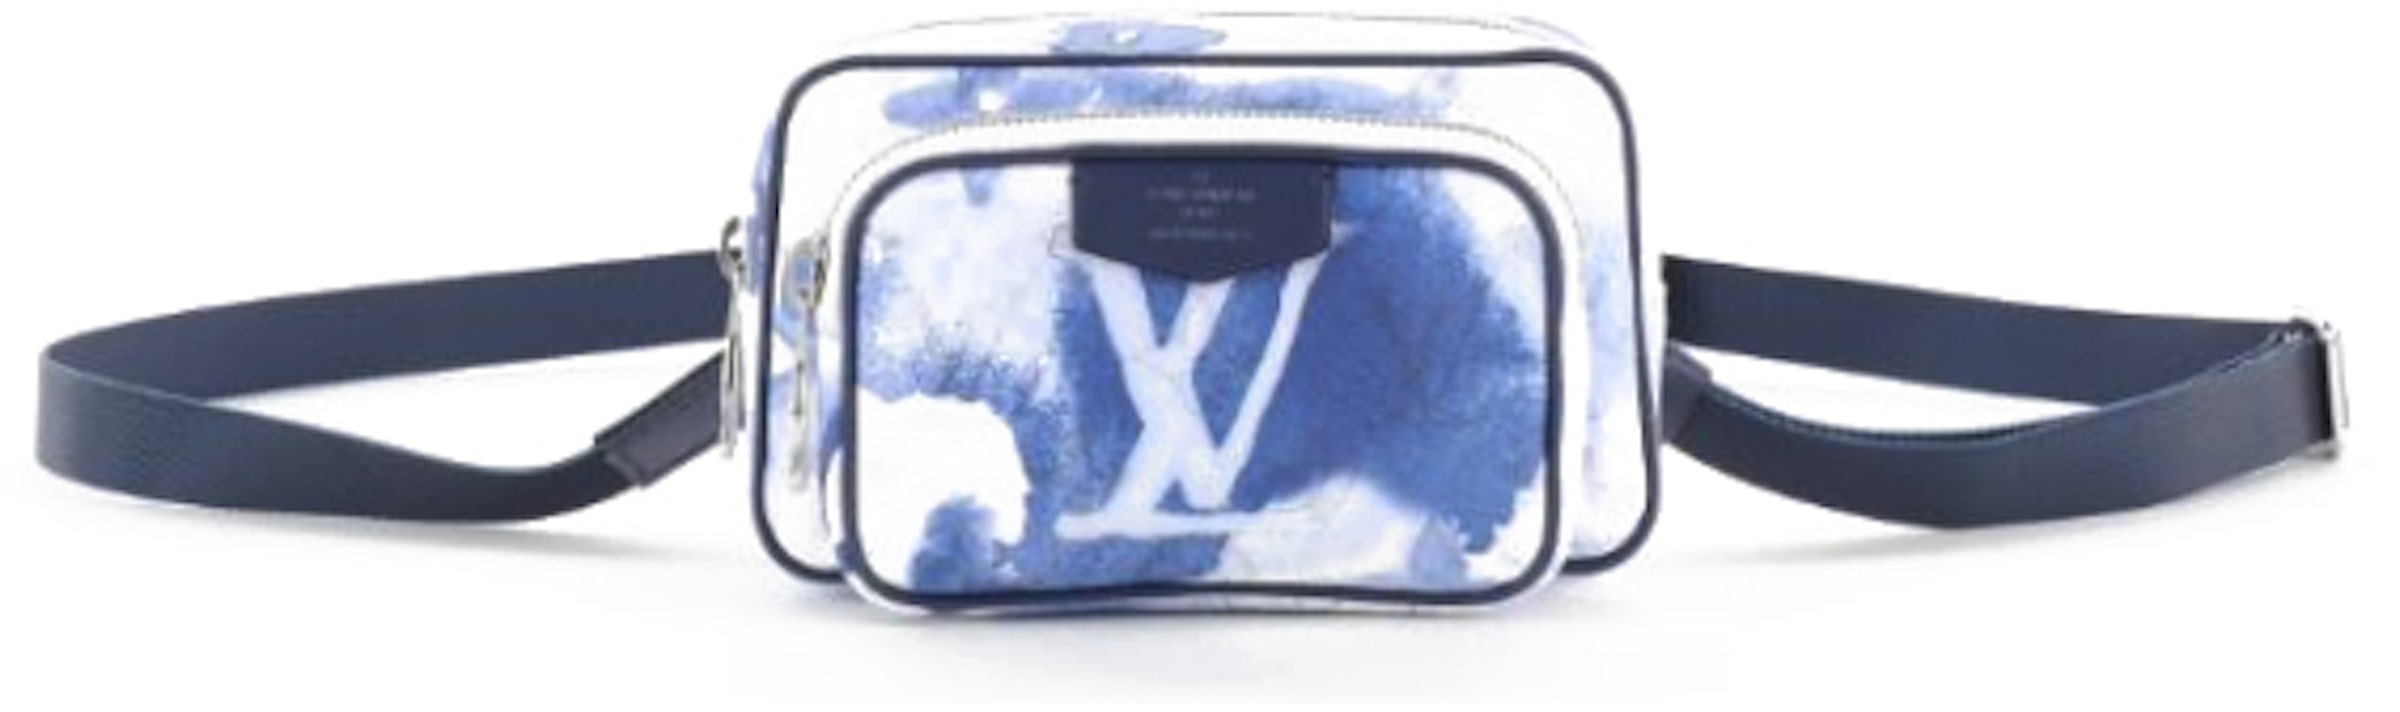 Louis Vuitton Monogram Watercolor Outdoor Pouch Blue Unisex at